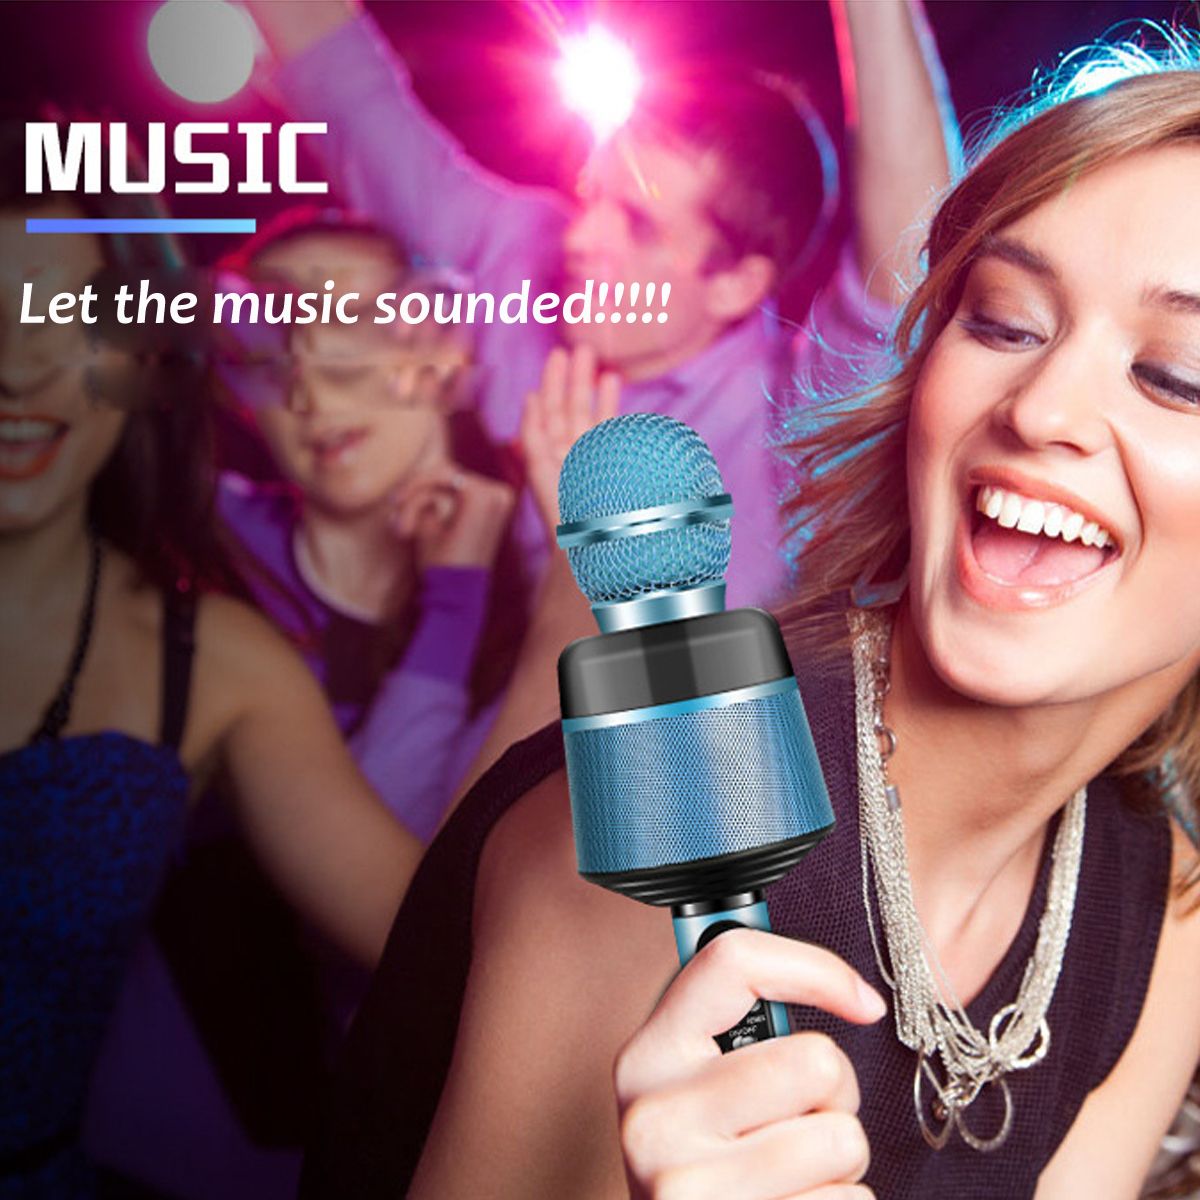 Home-Karaoke-Microphones-Speaker-Handheld-Music-Player-Singing-Recorder-KTV-1613578